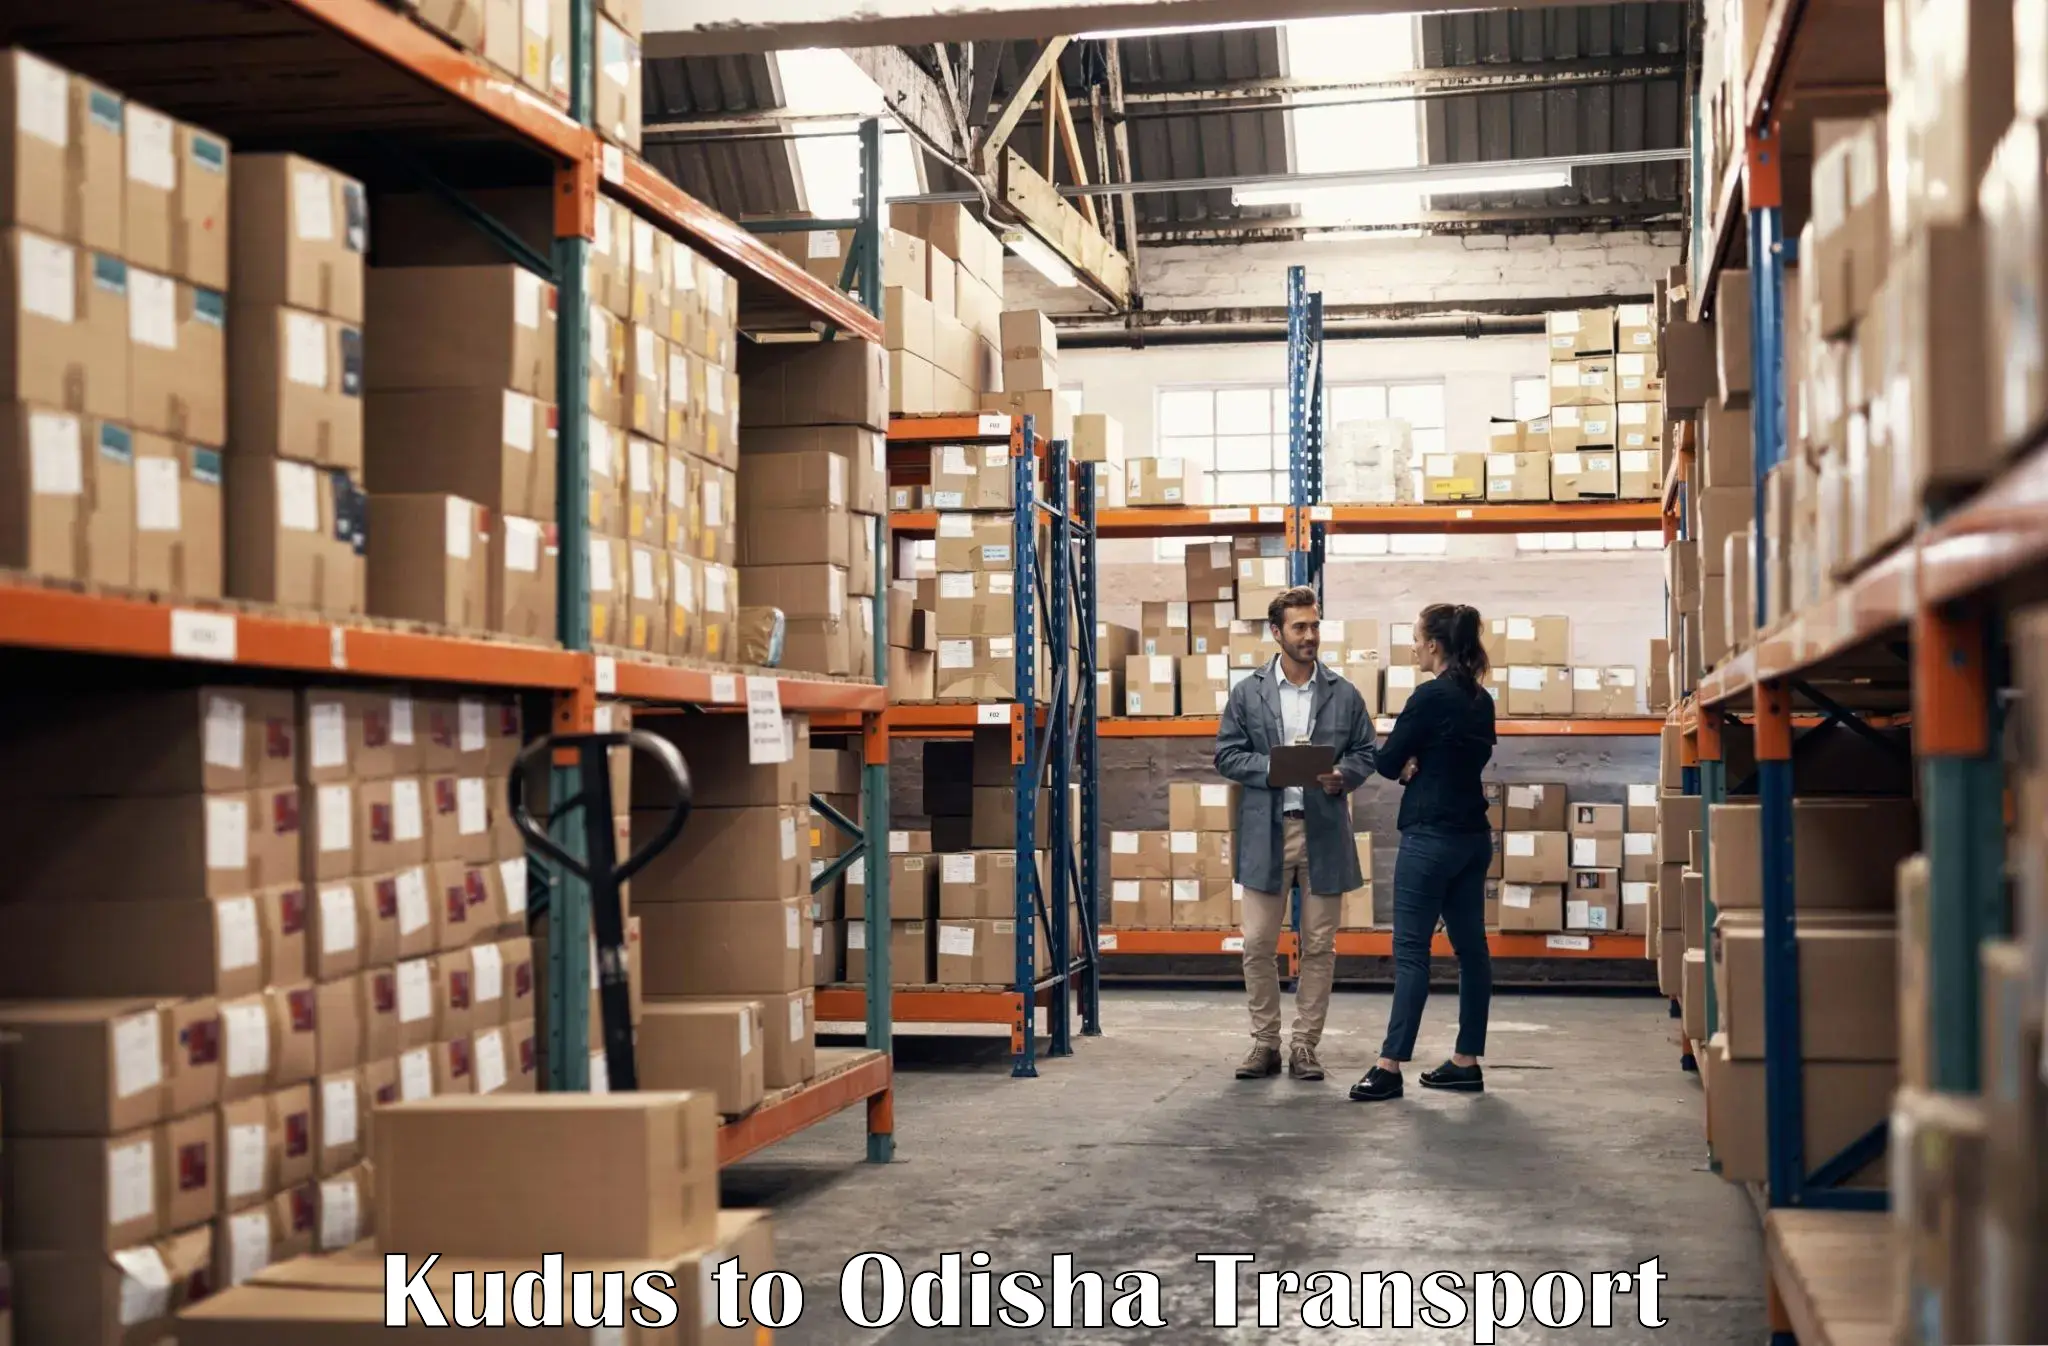 Truck transport companies in India Kudus to Dandisahi